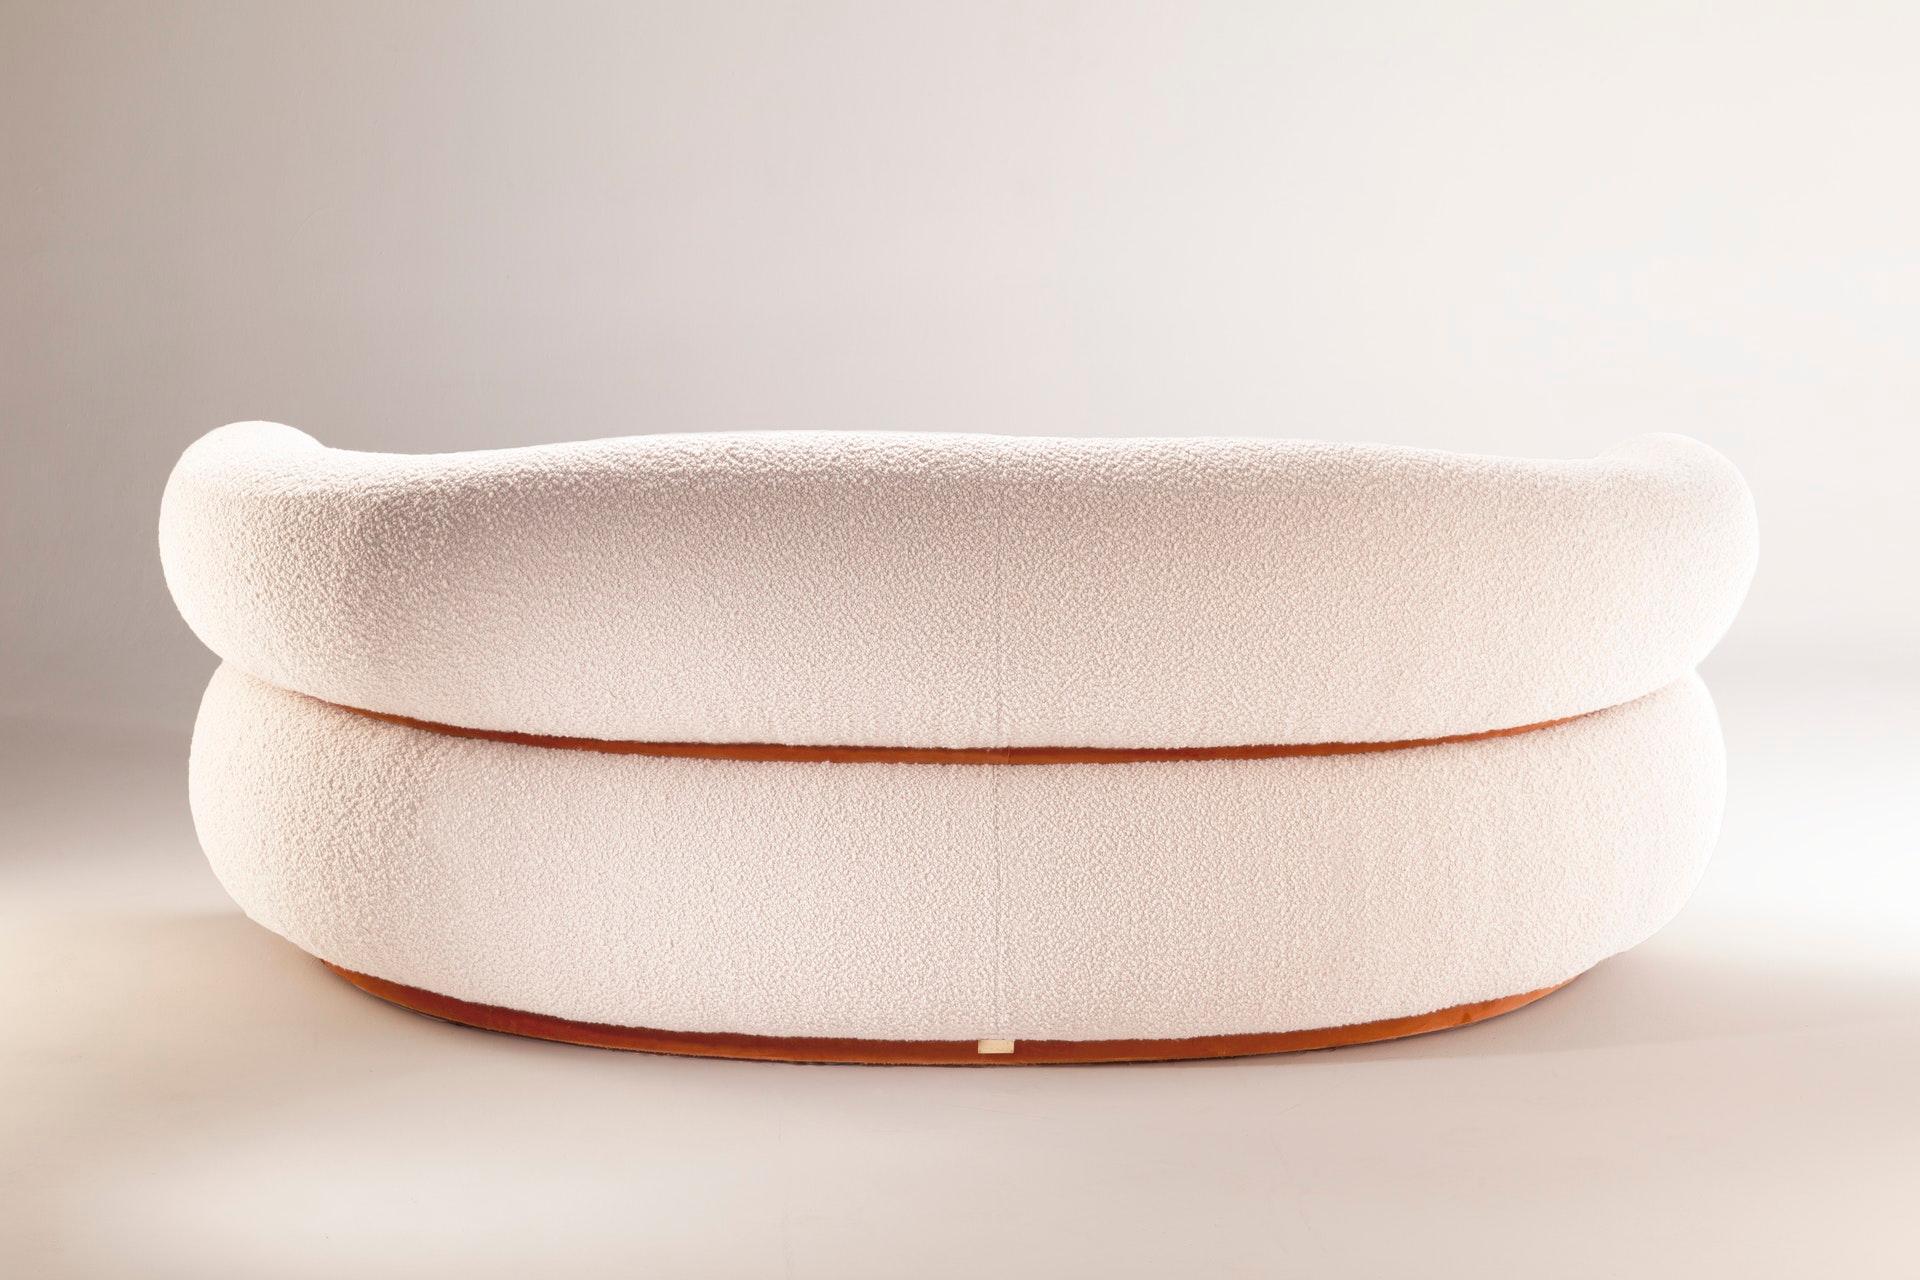 Wie eine warme Umarmung empfängt Sie das Malibu Round Sofa zum Verweilen und Entspannen. Als gehobene Hommage an das goldene Zeitalter des Midcentury-Designs und der organischen Architektur strahlt er durch seine ungewöhnlichen Proportionen und